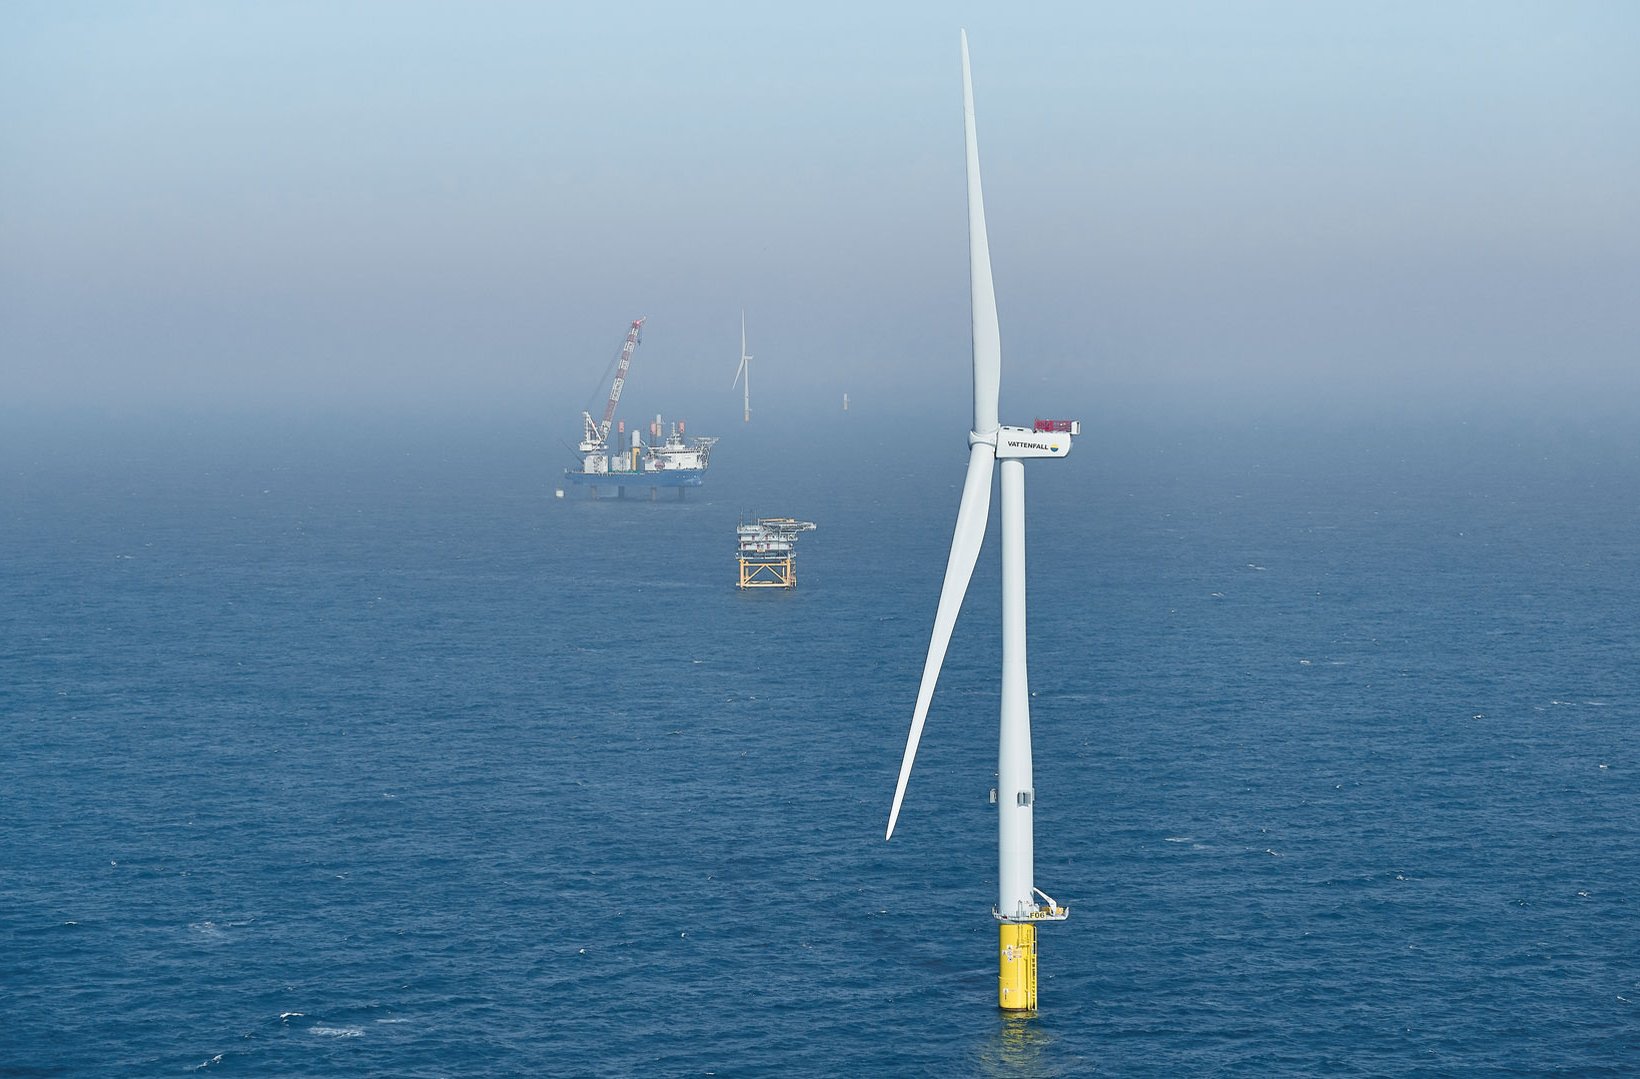 Horns rev 3 offshore wind farm